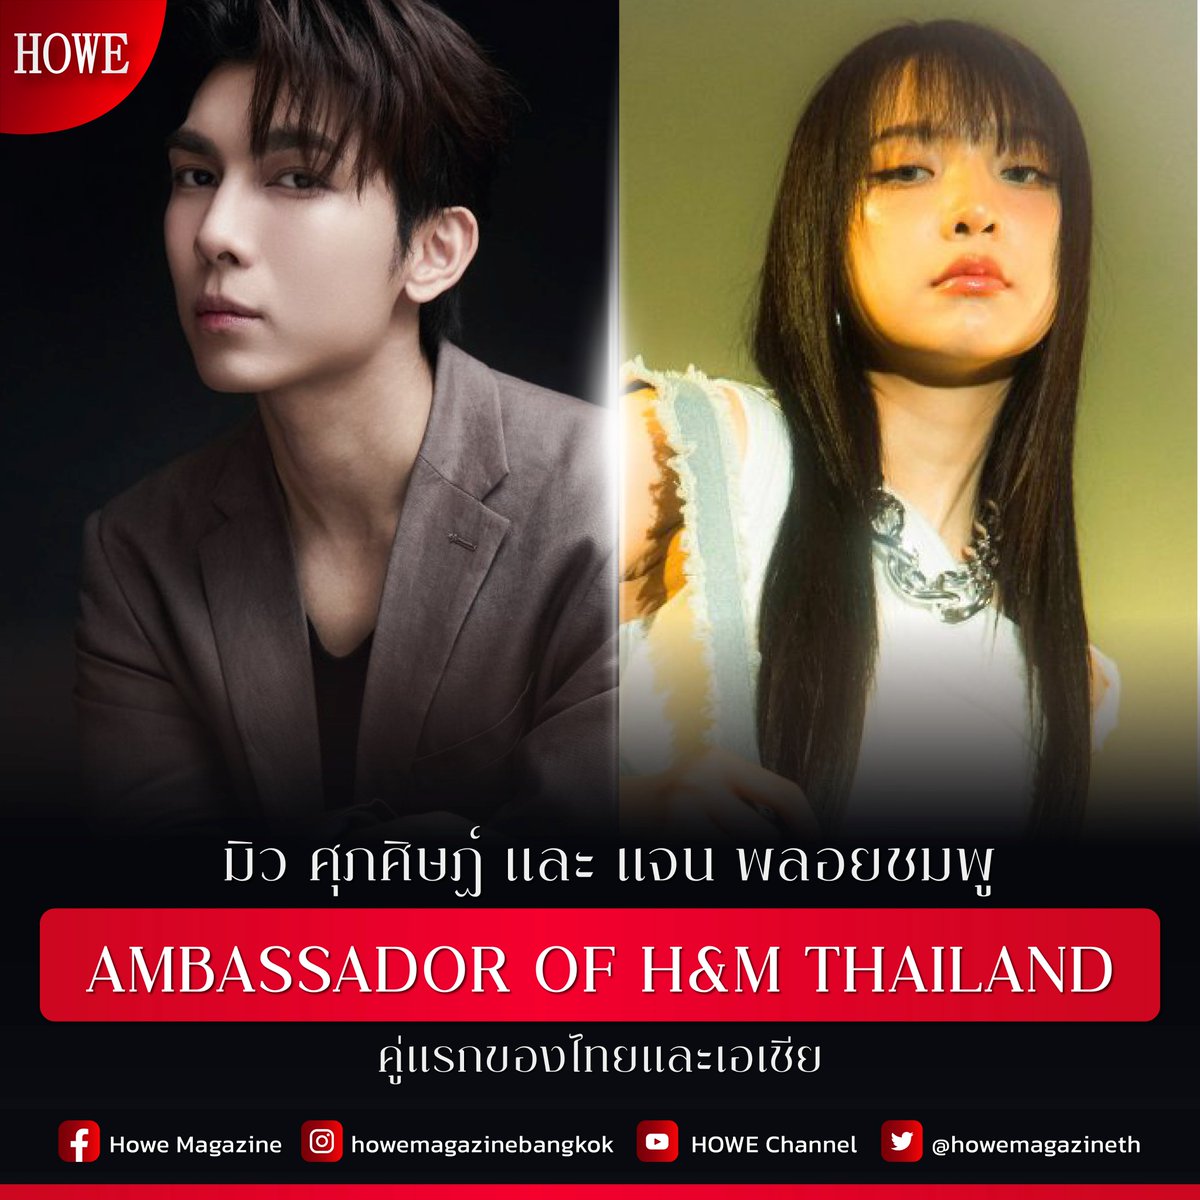 H&M ประกาศแต่งตั้ง 'มิว ศุภศิษฏ์' และ 'แจน พลอยชมพู' เป็น Ambassador of H&M Thailand คู่แรกของเอเชีย ซึ่งการประกาศนี้นับเป็นสิ่งสำคัญในการร่วมงาน ของ H&M โดยทั้งสองพร้อมจะถ่ายทอดความเป็นแบรนด์ผ่านบุคลิกภาพและความสามารถที่โดดเด่น…